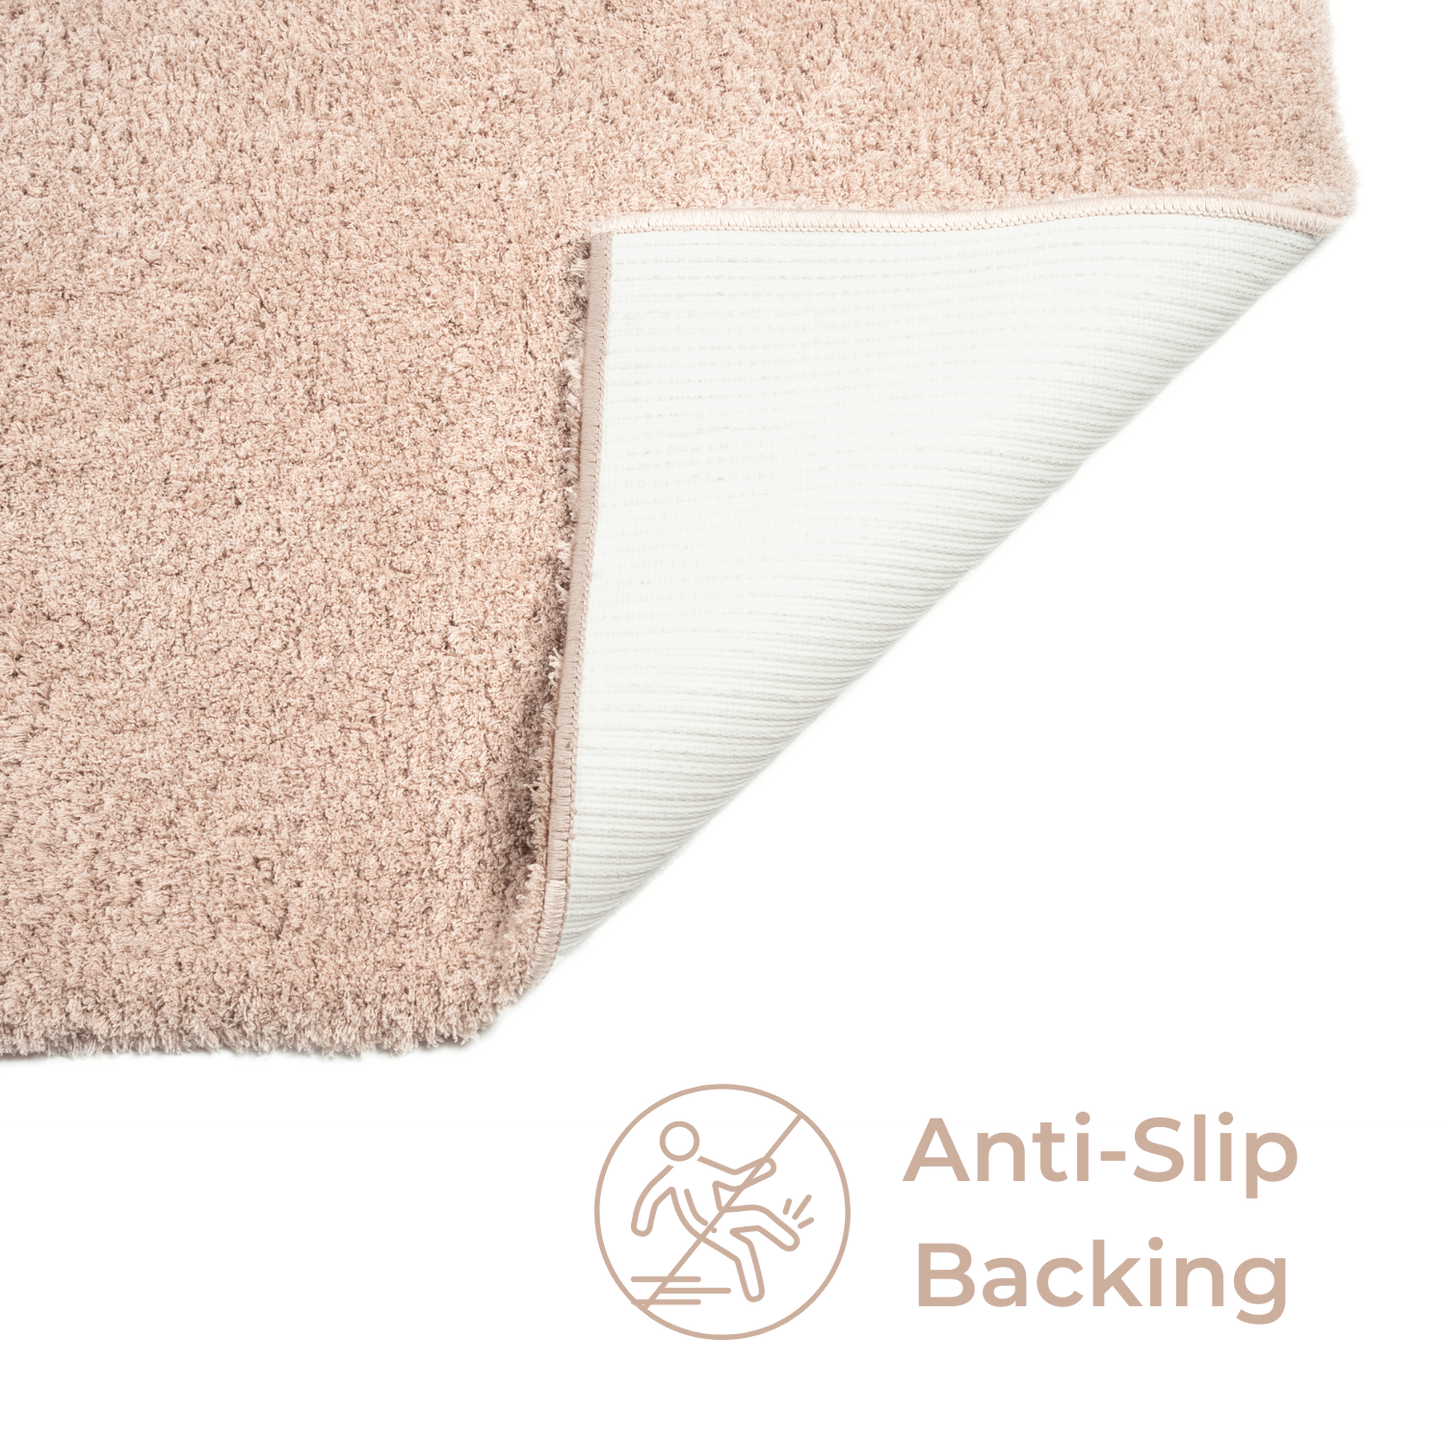 Splendor Premium Soft Bath Mat Blush Pink, Anti-Slip & Machine Washable